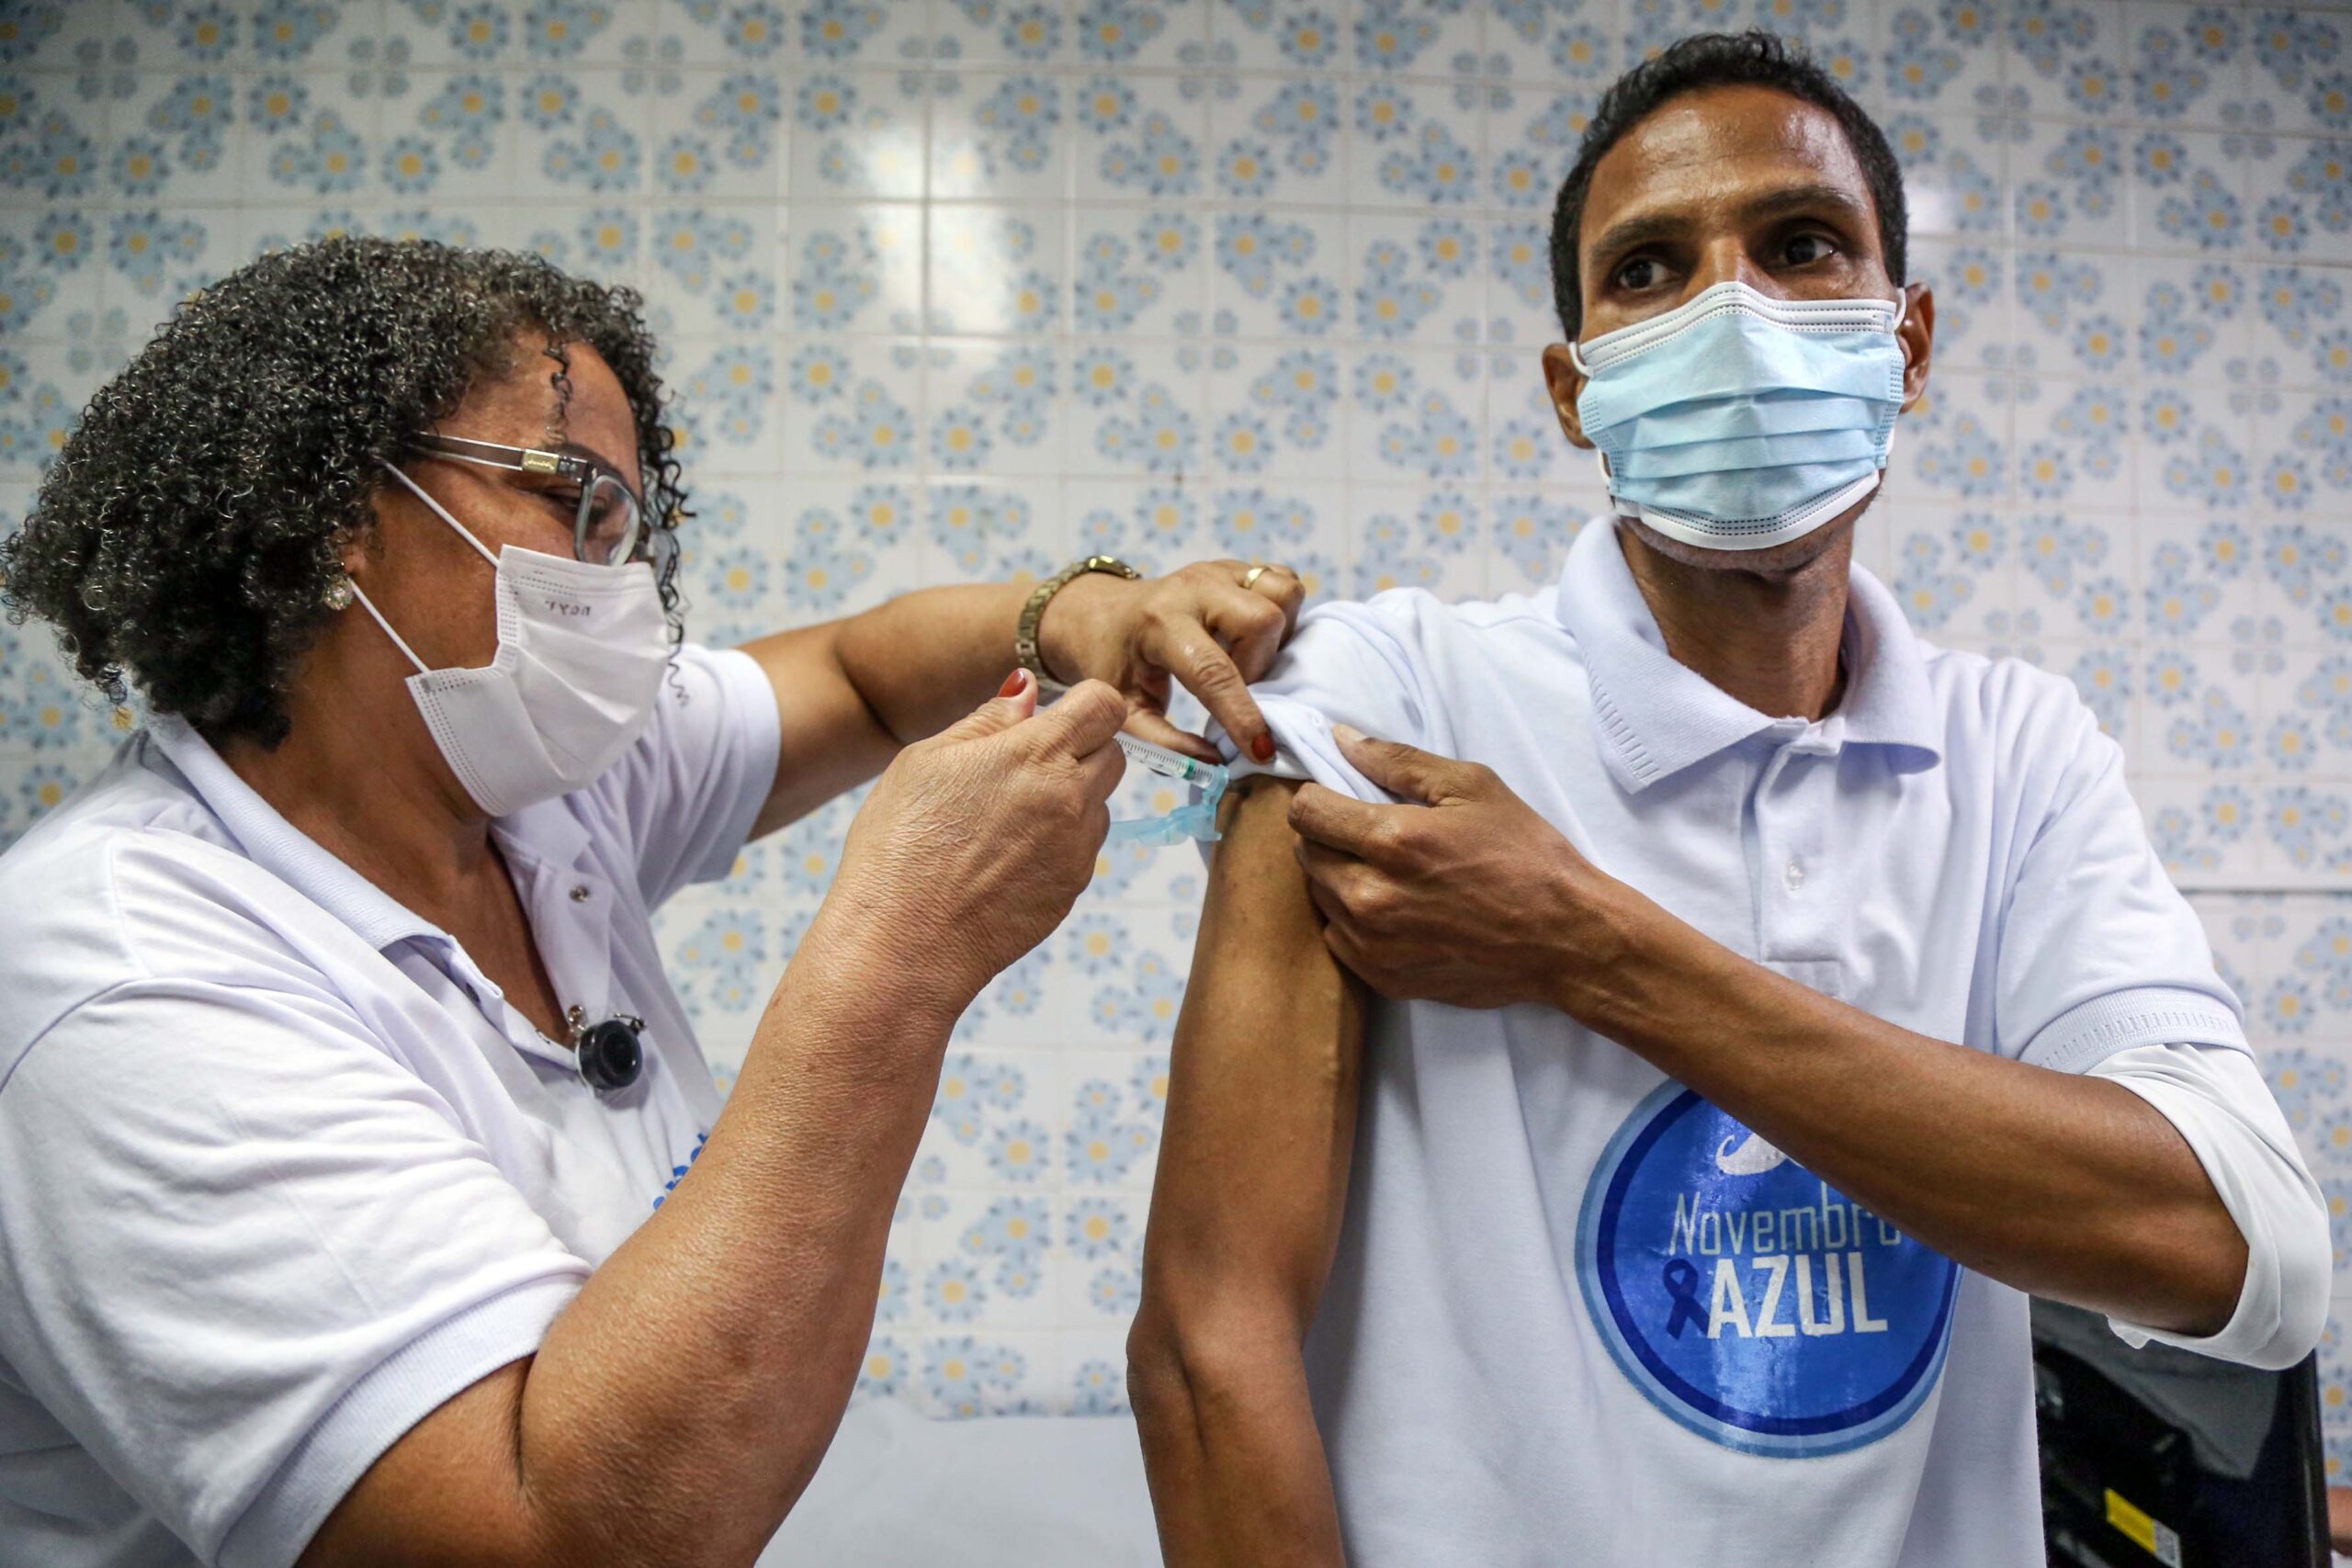 Salvador ultrapassa 2 milhões de vacinados com a 2ª dose contra Covid-19